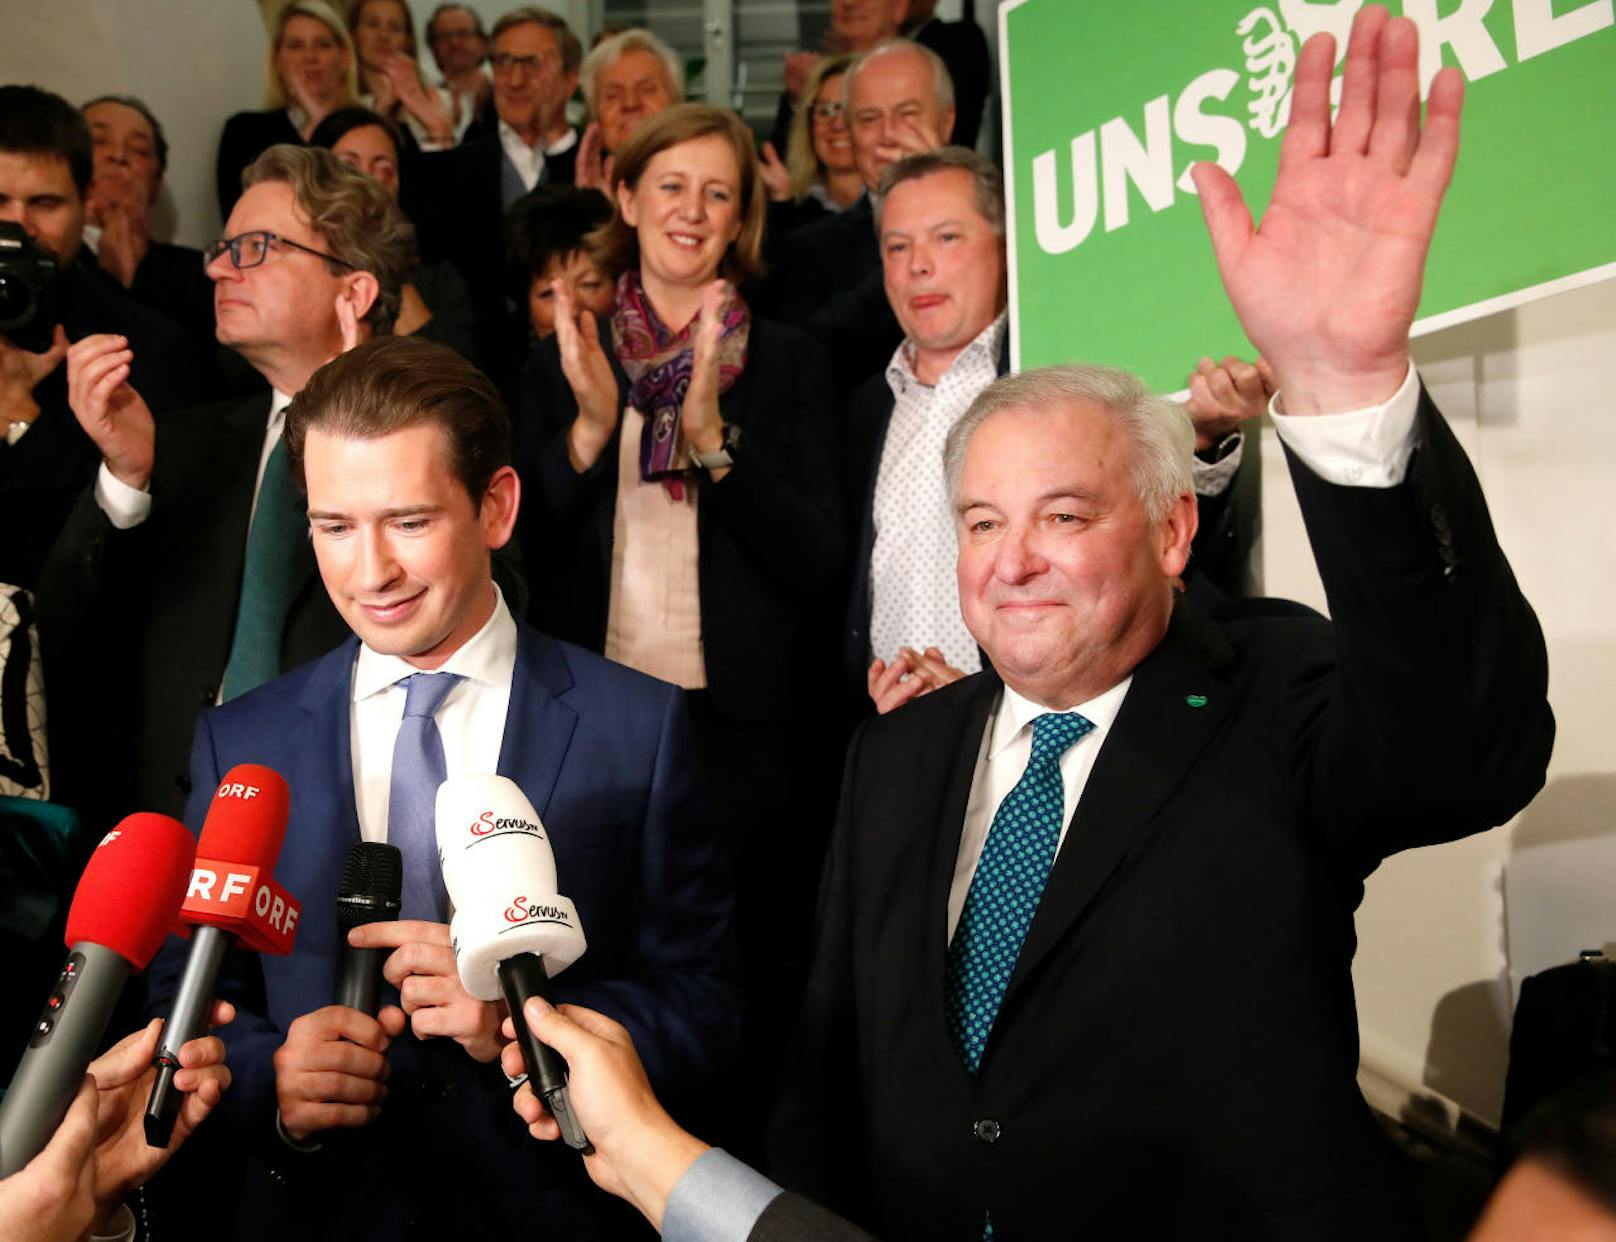 ÖVP-Bundesparteichef Sebastian Kurz und ÖVP-Spitzenkandidat Landeshauptmann Hermann Schützenhöfer am Sonntag, 24. November 2019, in der Parteizentrale im Rahmen der steirischen Landtagswahl in Graz.